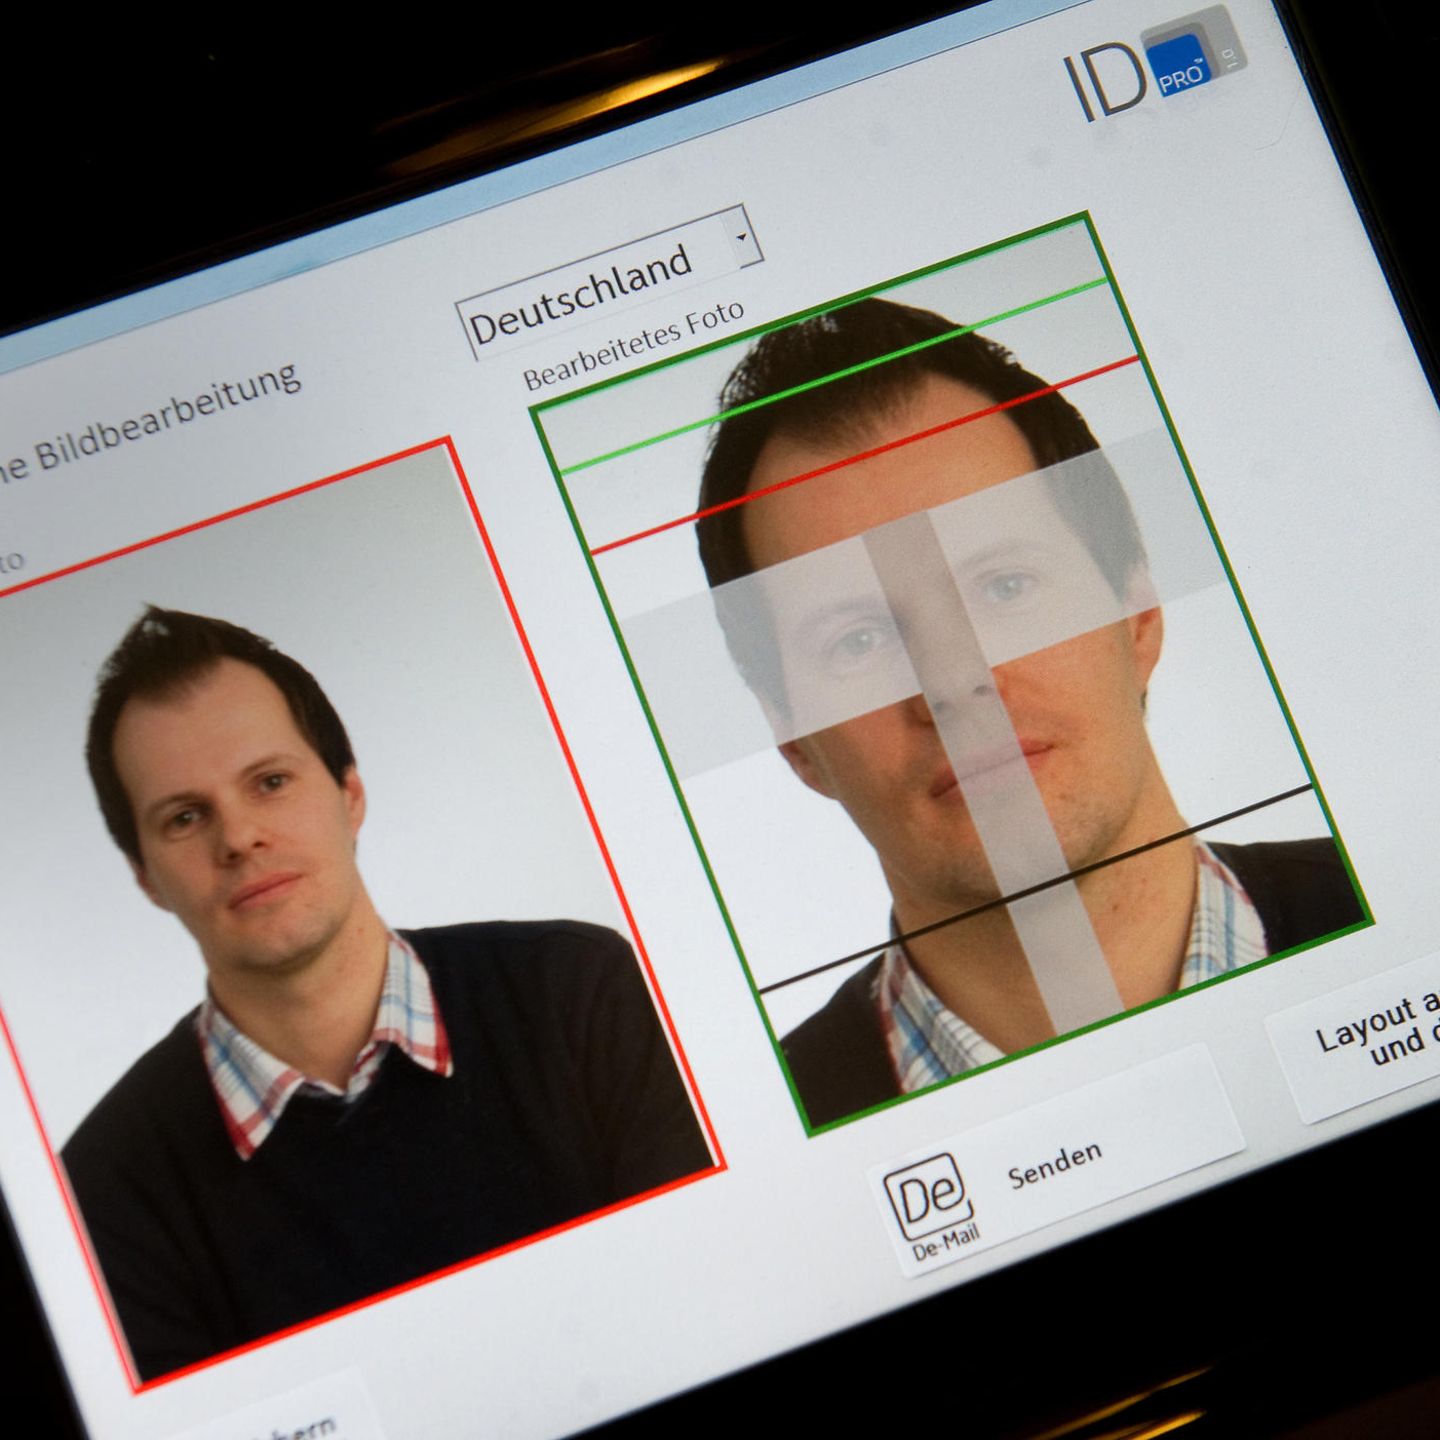 Passfotos Kunftig Nur Noch Digital Sicherheit Fur Ausweis Stern De